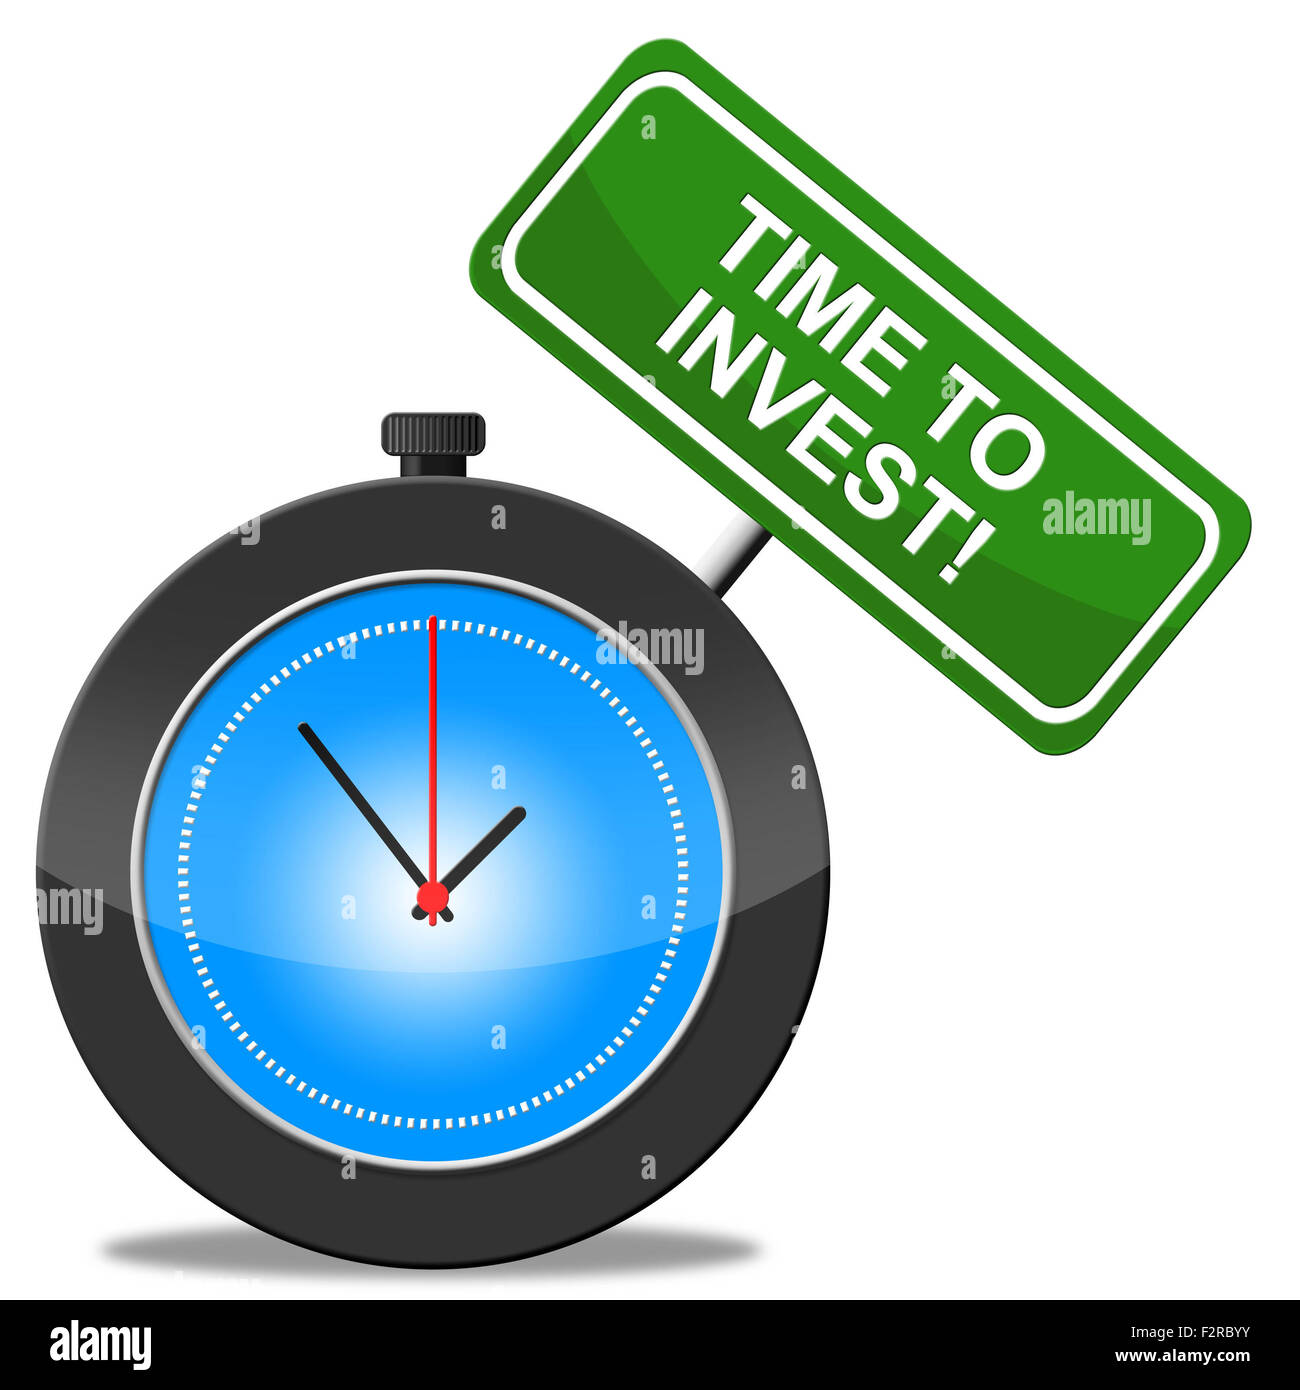 Es el momento de invertir indicando el retorno de la inversión y el ROI Foto de stock